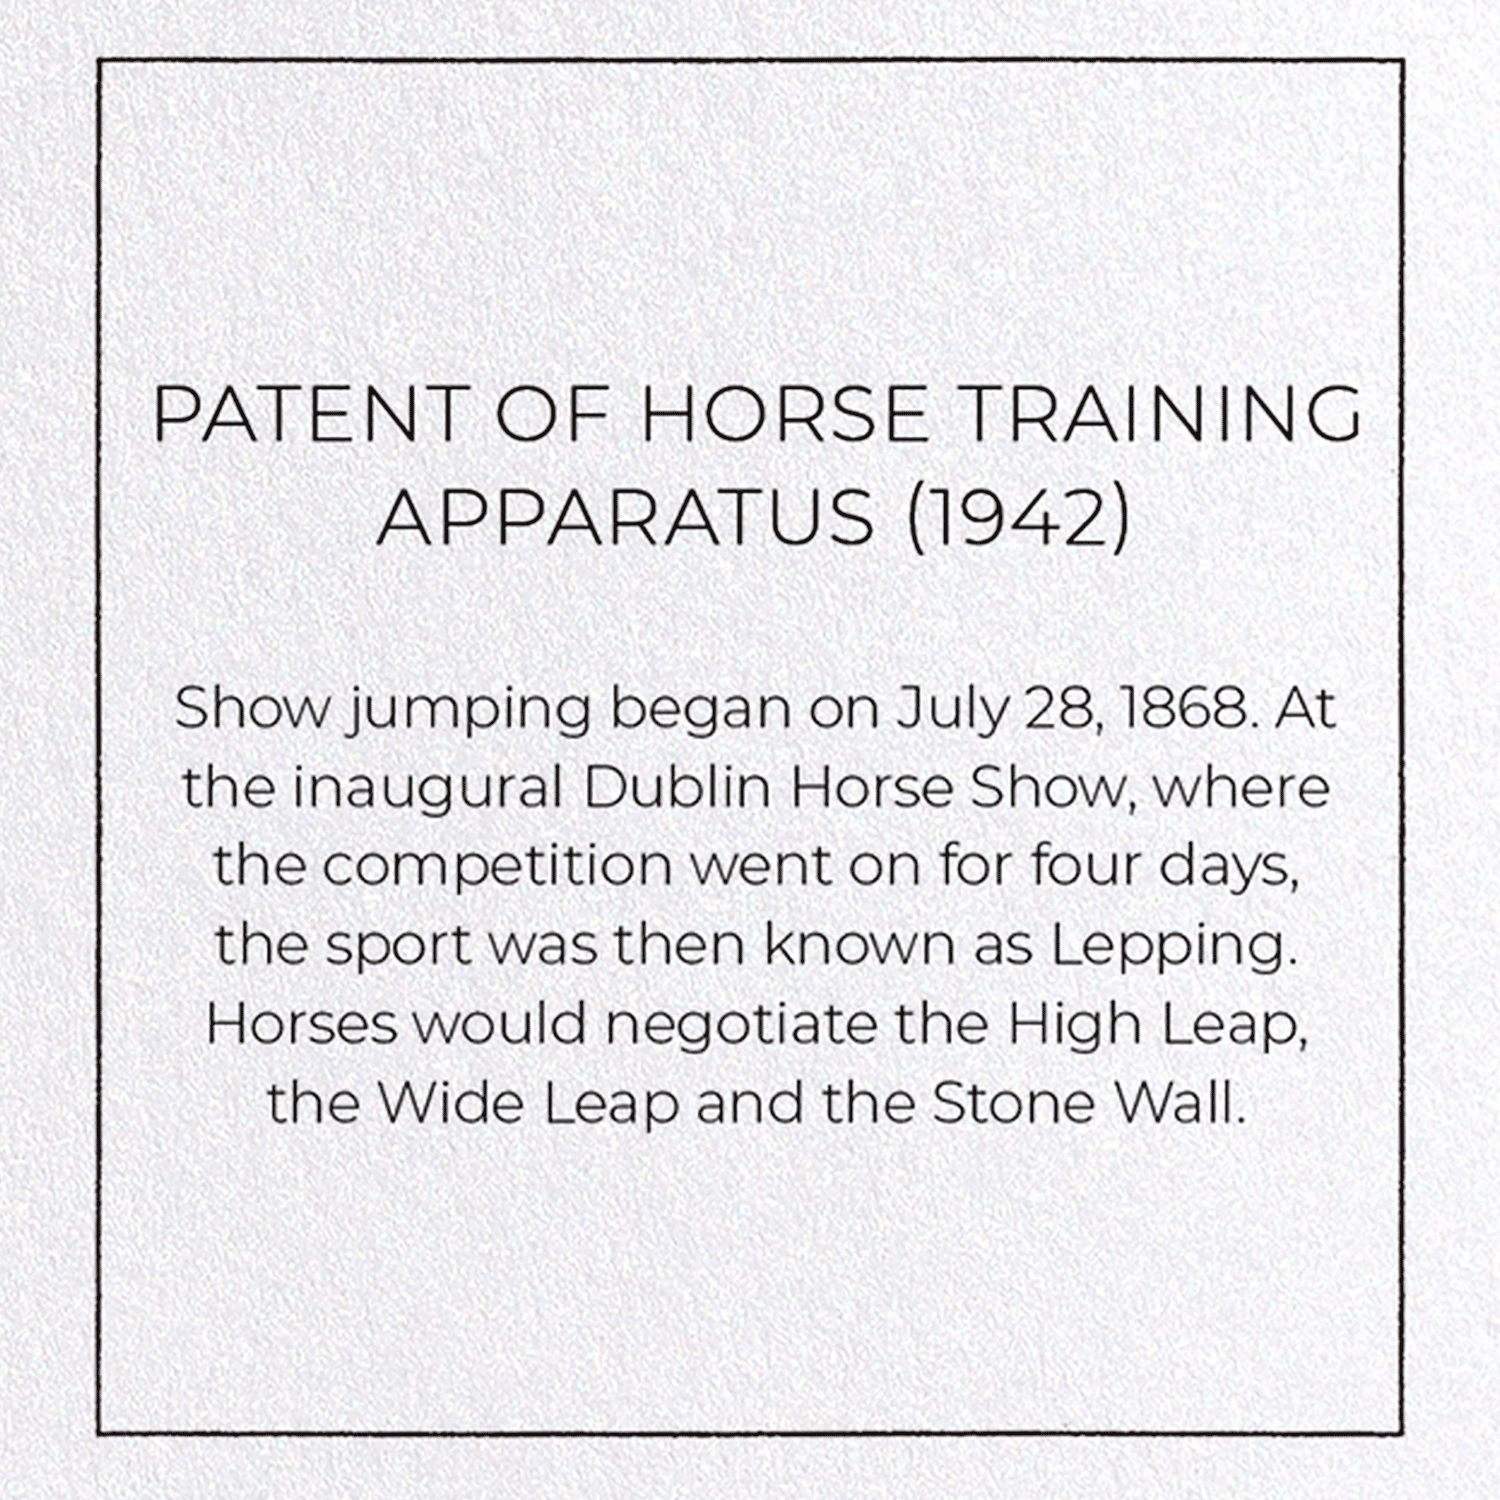 PATENT OF HORSE TRAINING APPARATUS (1942)